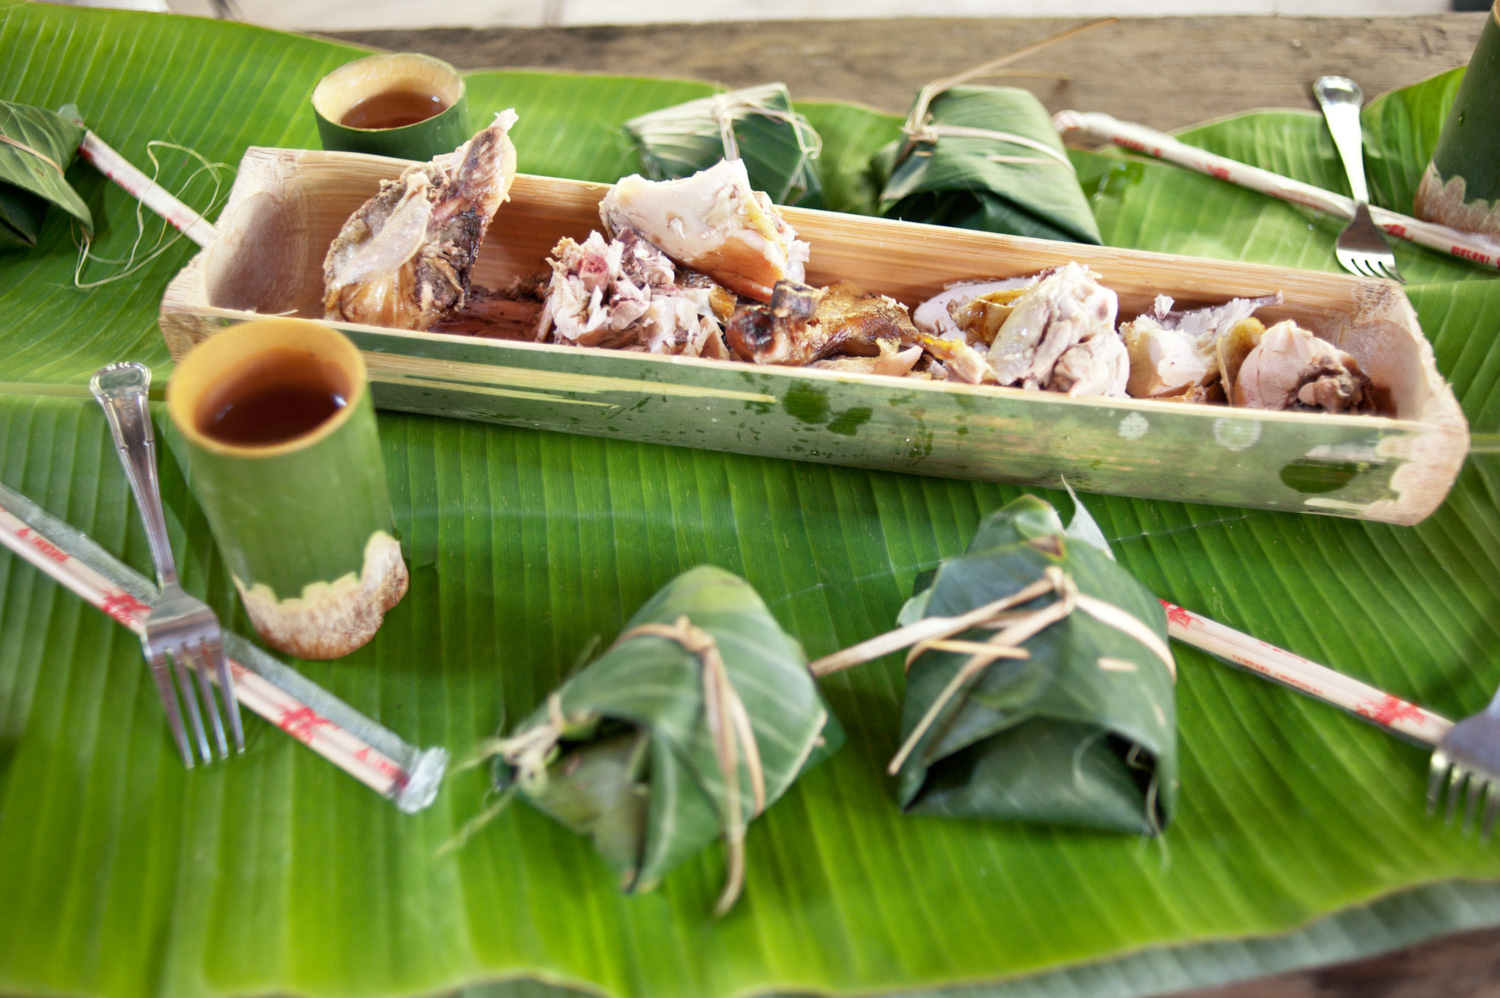 déjeuner de poulet servi sur bambou et feuille de bananier